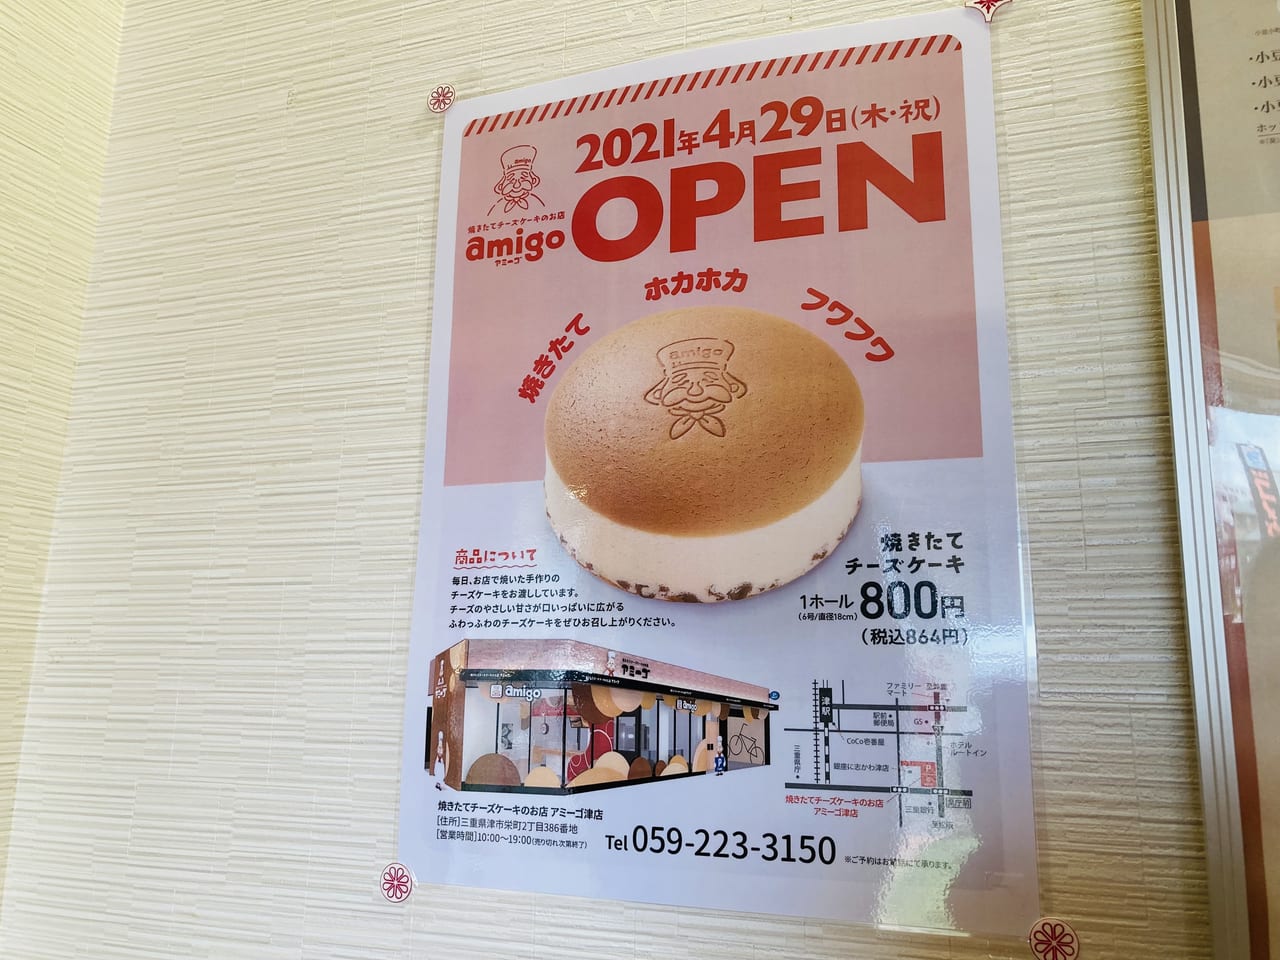 松阪市 川井町の513bakeryに チーズケーキのお店 アミーゴ がオープンです 号外net 松阪市